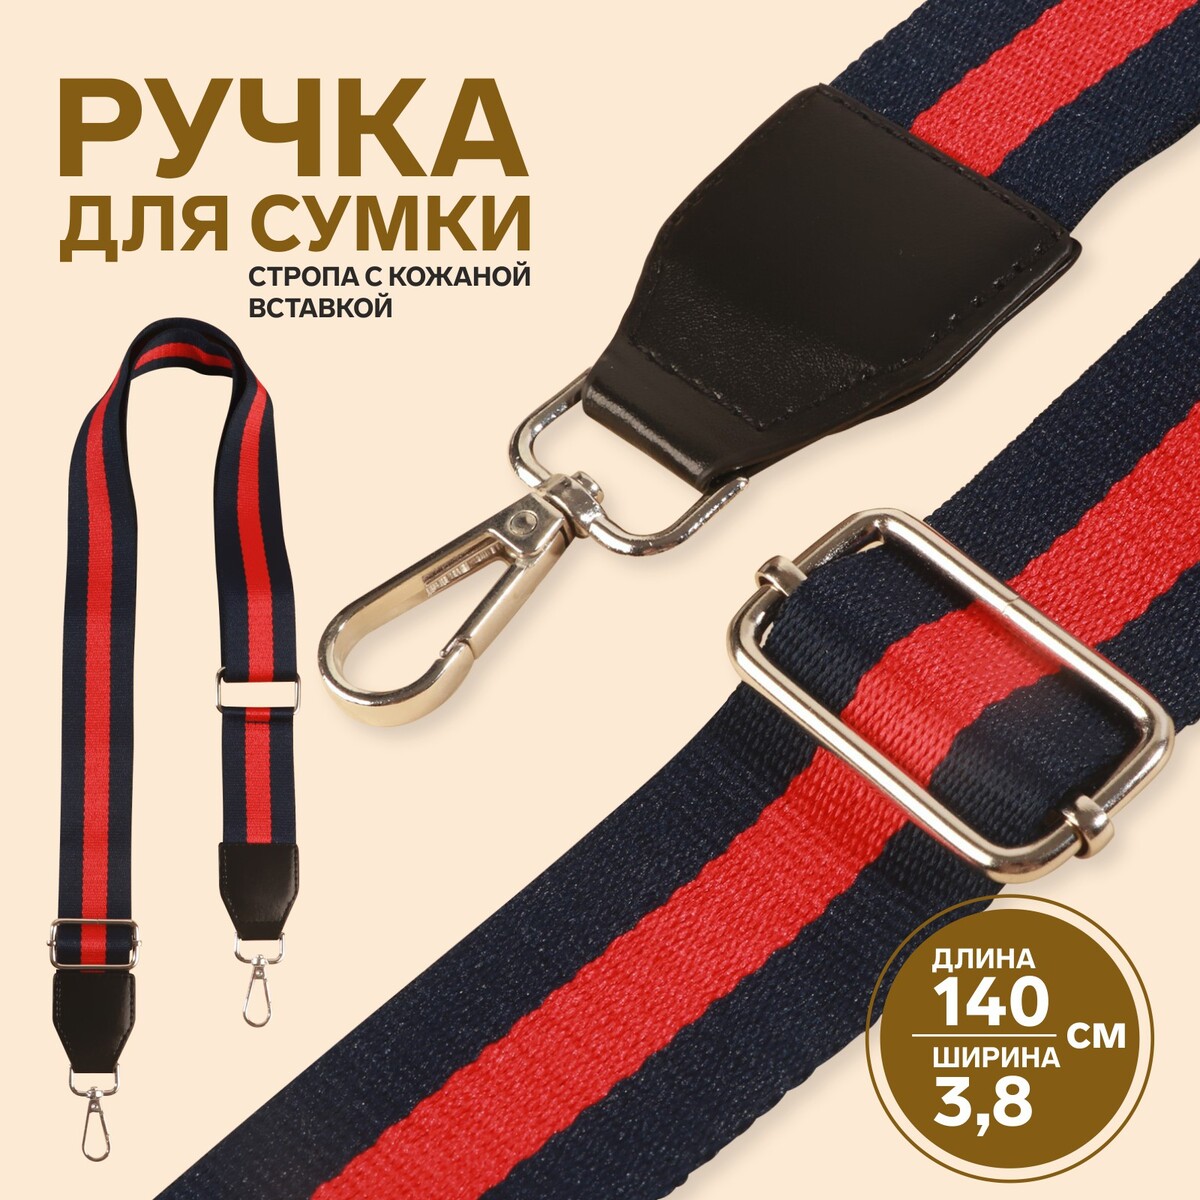 Ручка для сумки, стропа с кожаной вставкой, 139 ± 3 × 3,8 см, цвет синий/красный ручка панорама грозный цв красный